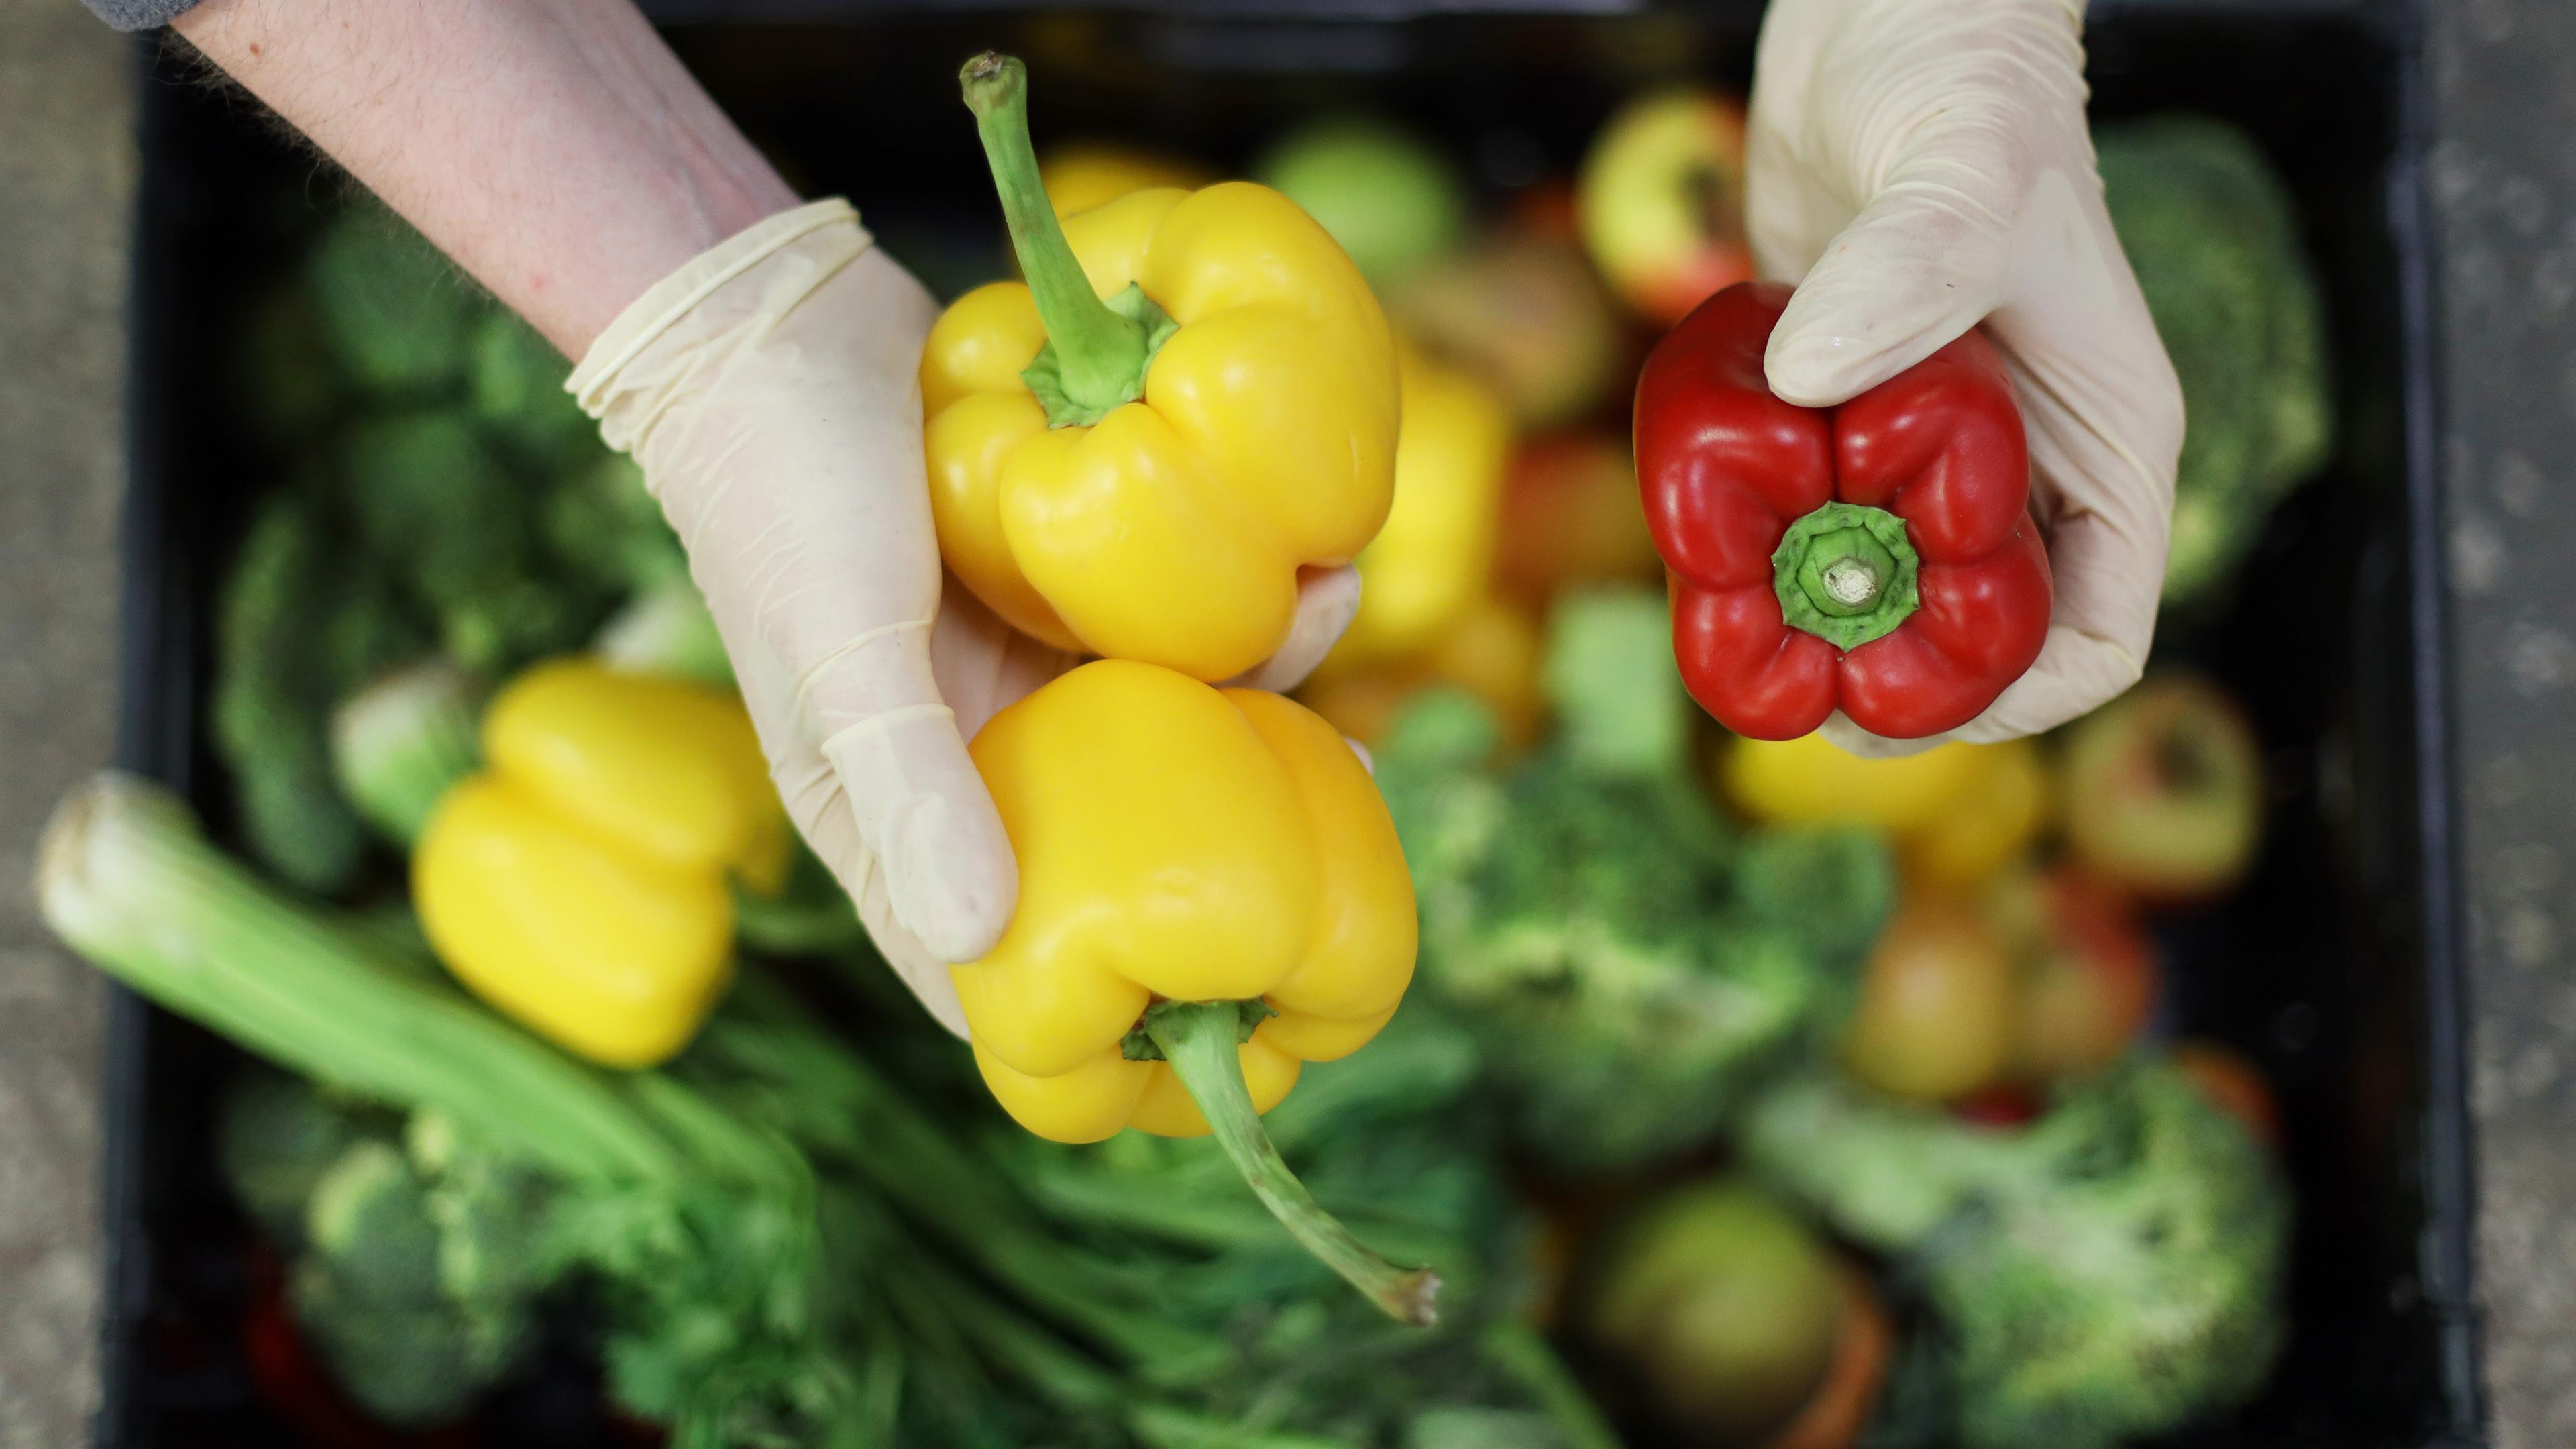 Symbolbild Lebensmittelverteilung: Hände mit Handschuhen sortieren Gemüse